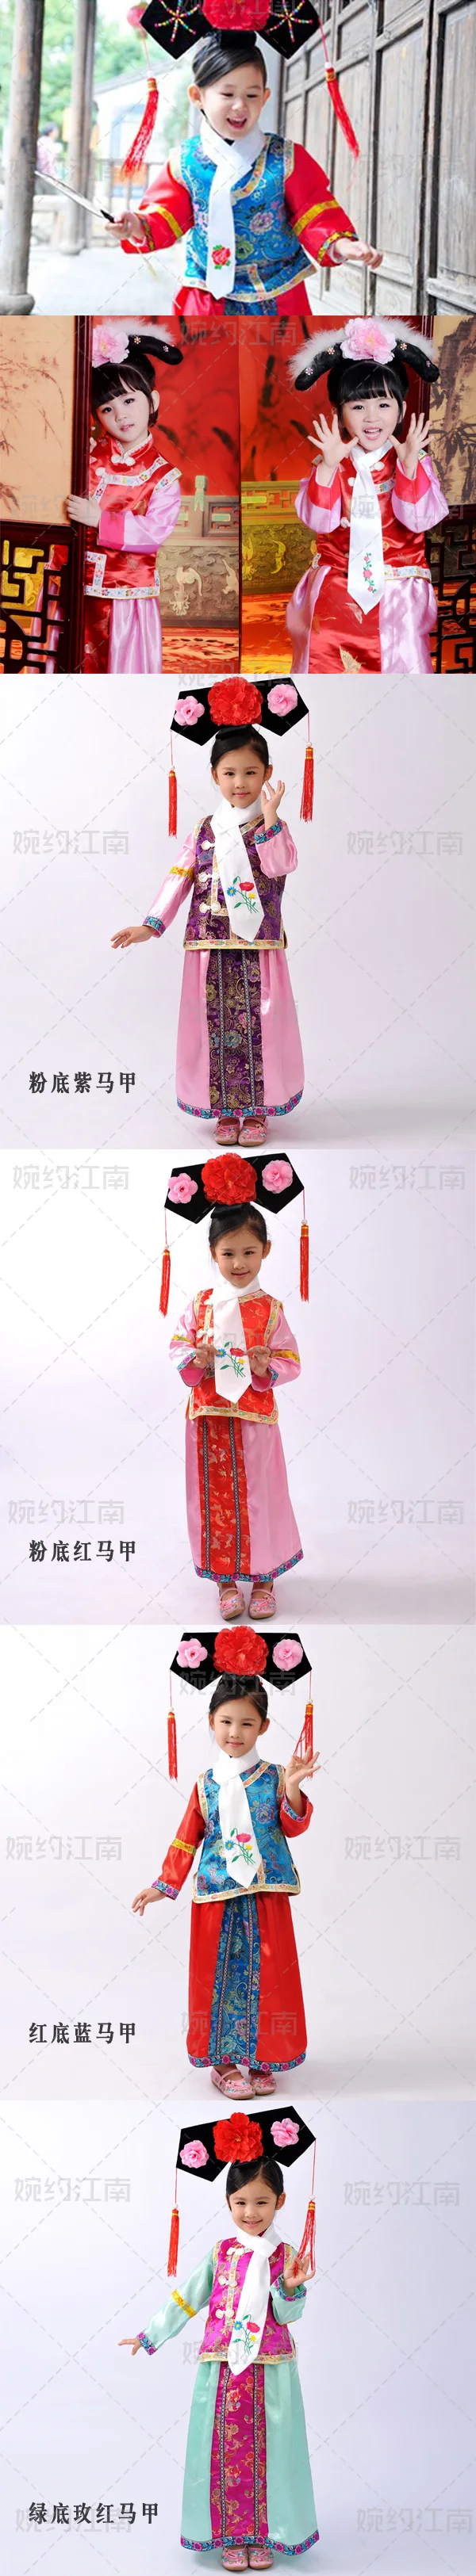 Полиэстер для женщин прямые продажи Реальные Disfraces Hmong одежда Древний китайский костюм династии Цин принцесса для детей